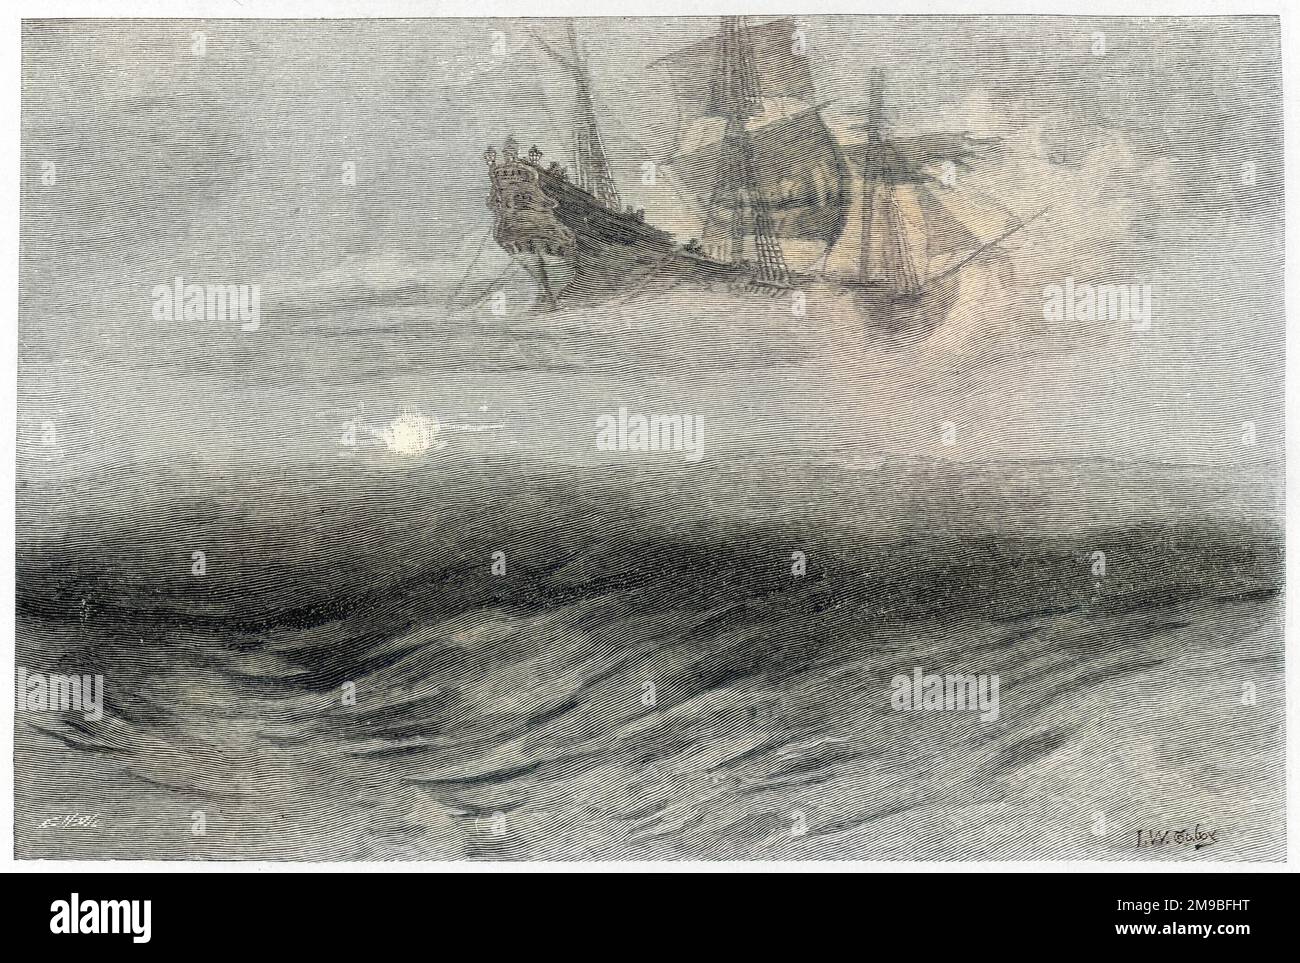 L'olandese volante immagini e fotografie stock ad alta risoluzione - Alamy